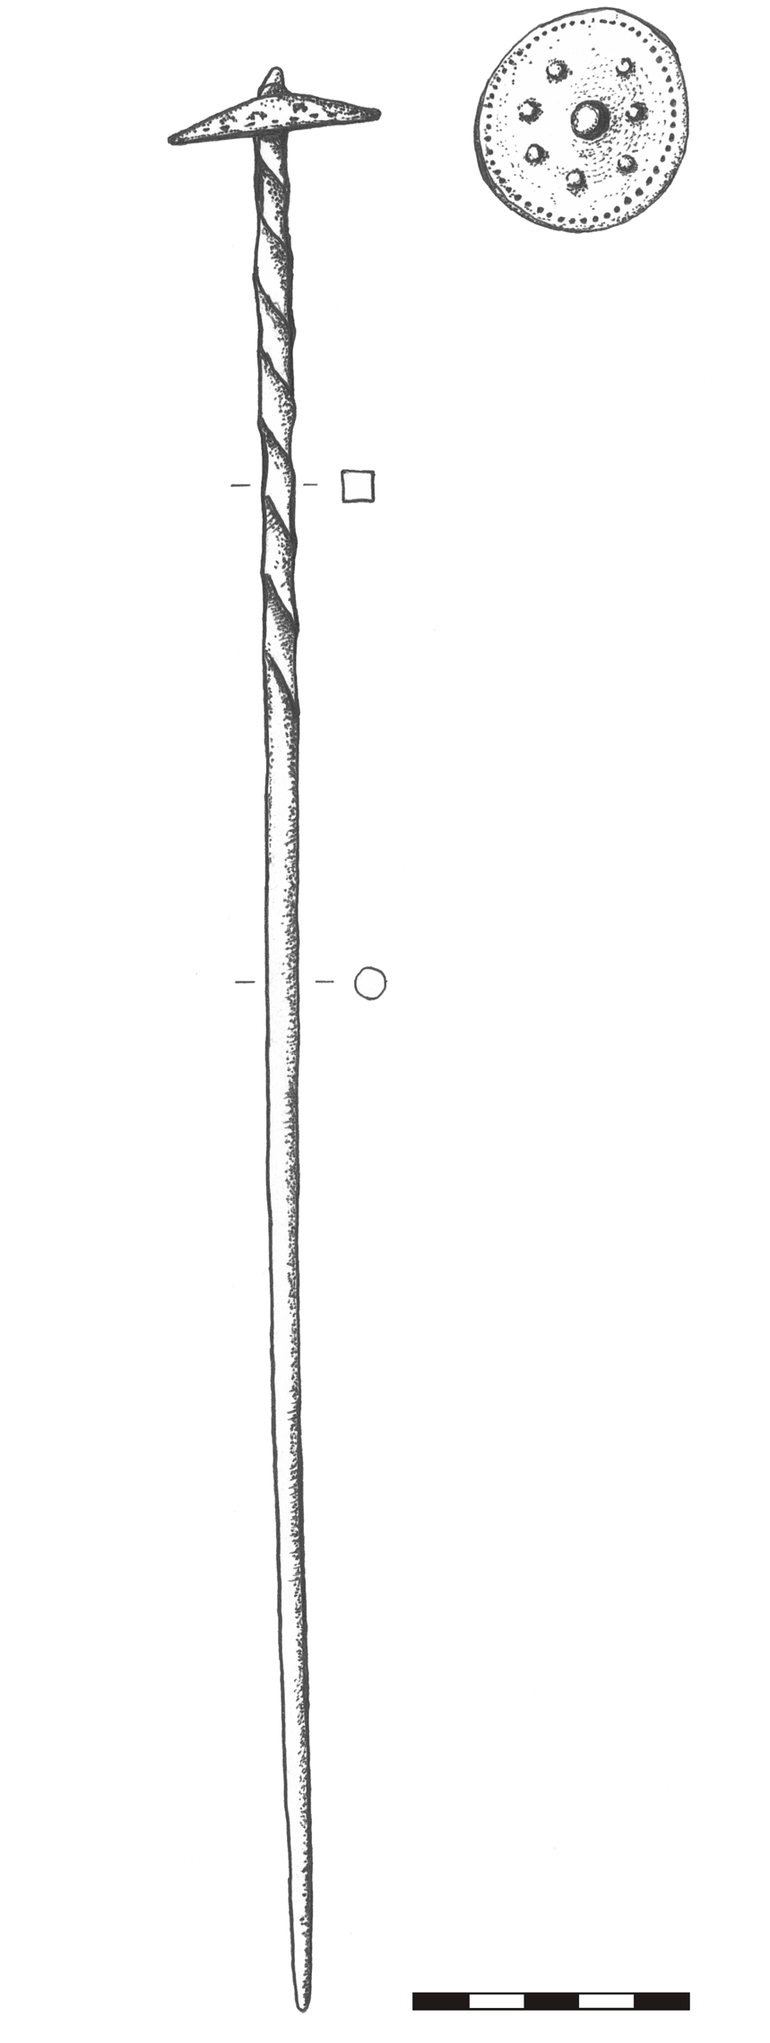 Бронзова шпилька з випуклою голівкою (капелюхоподібною) і скрученою у верхній частині ніжкою. Дріт в перерізі круглий, зверху – квадратний, товщиною 0,4–0,6 см. Довжина ніжки – 36,5 см; голівка в плані овальна, розмірами 4,3 × 4 см, орнаментована довкола по периметру малими вузликами, по центру – більшим вузлом, оточеним довкола сімома меншими